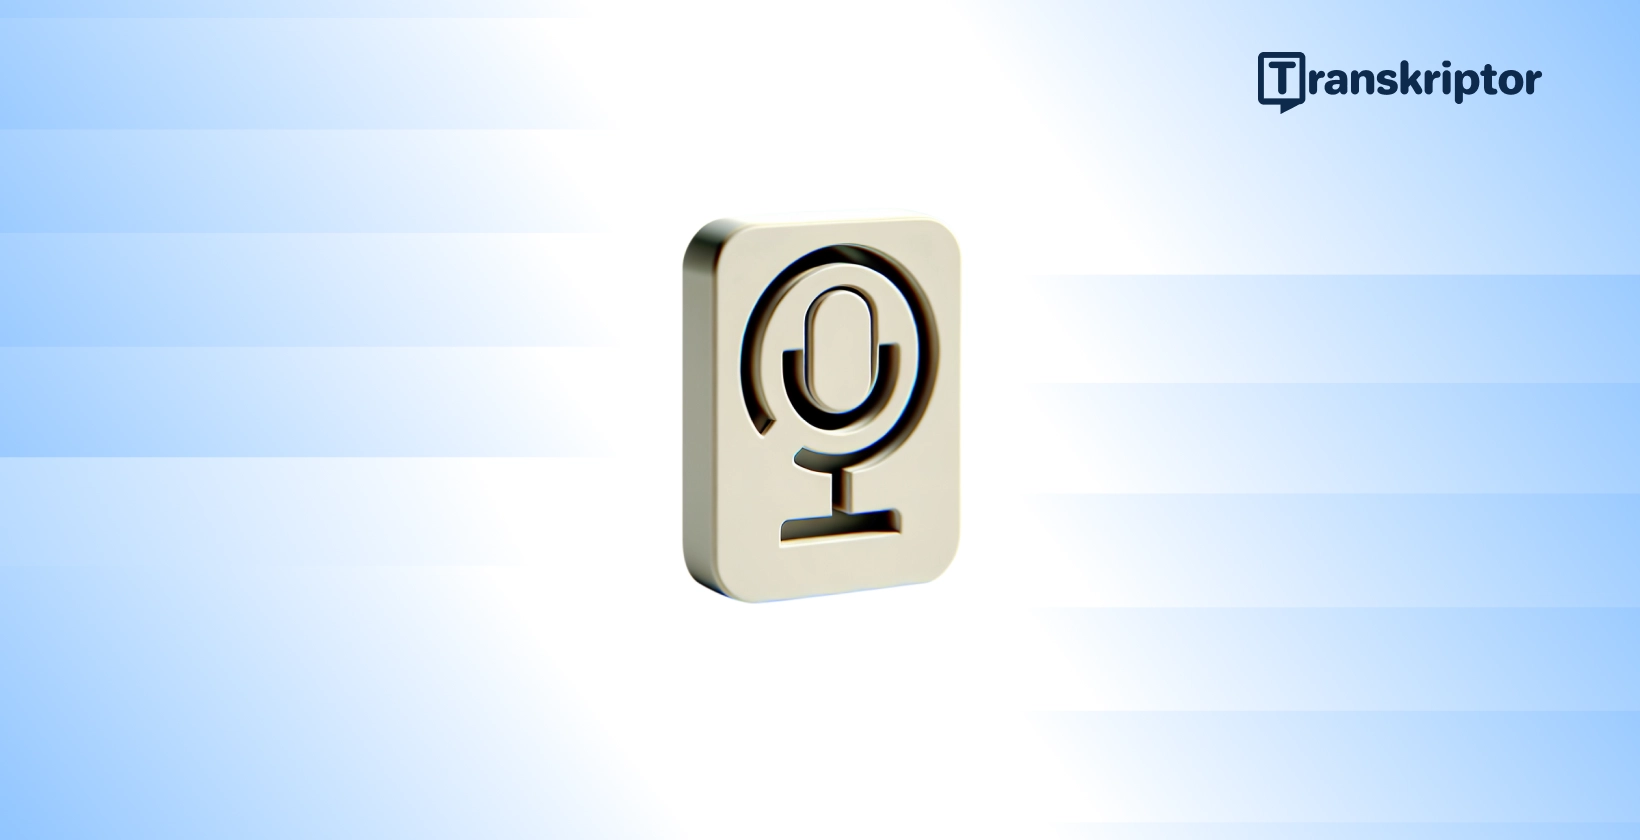 Mikrofon sa brojem 9 koji predstavlja transkripciju numeričkih podataka na audio snimcima.